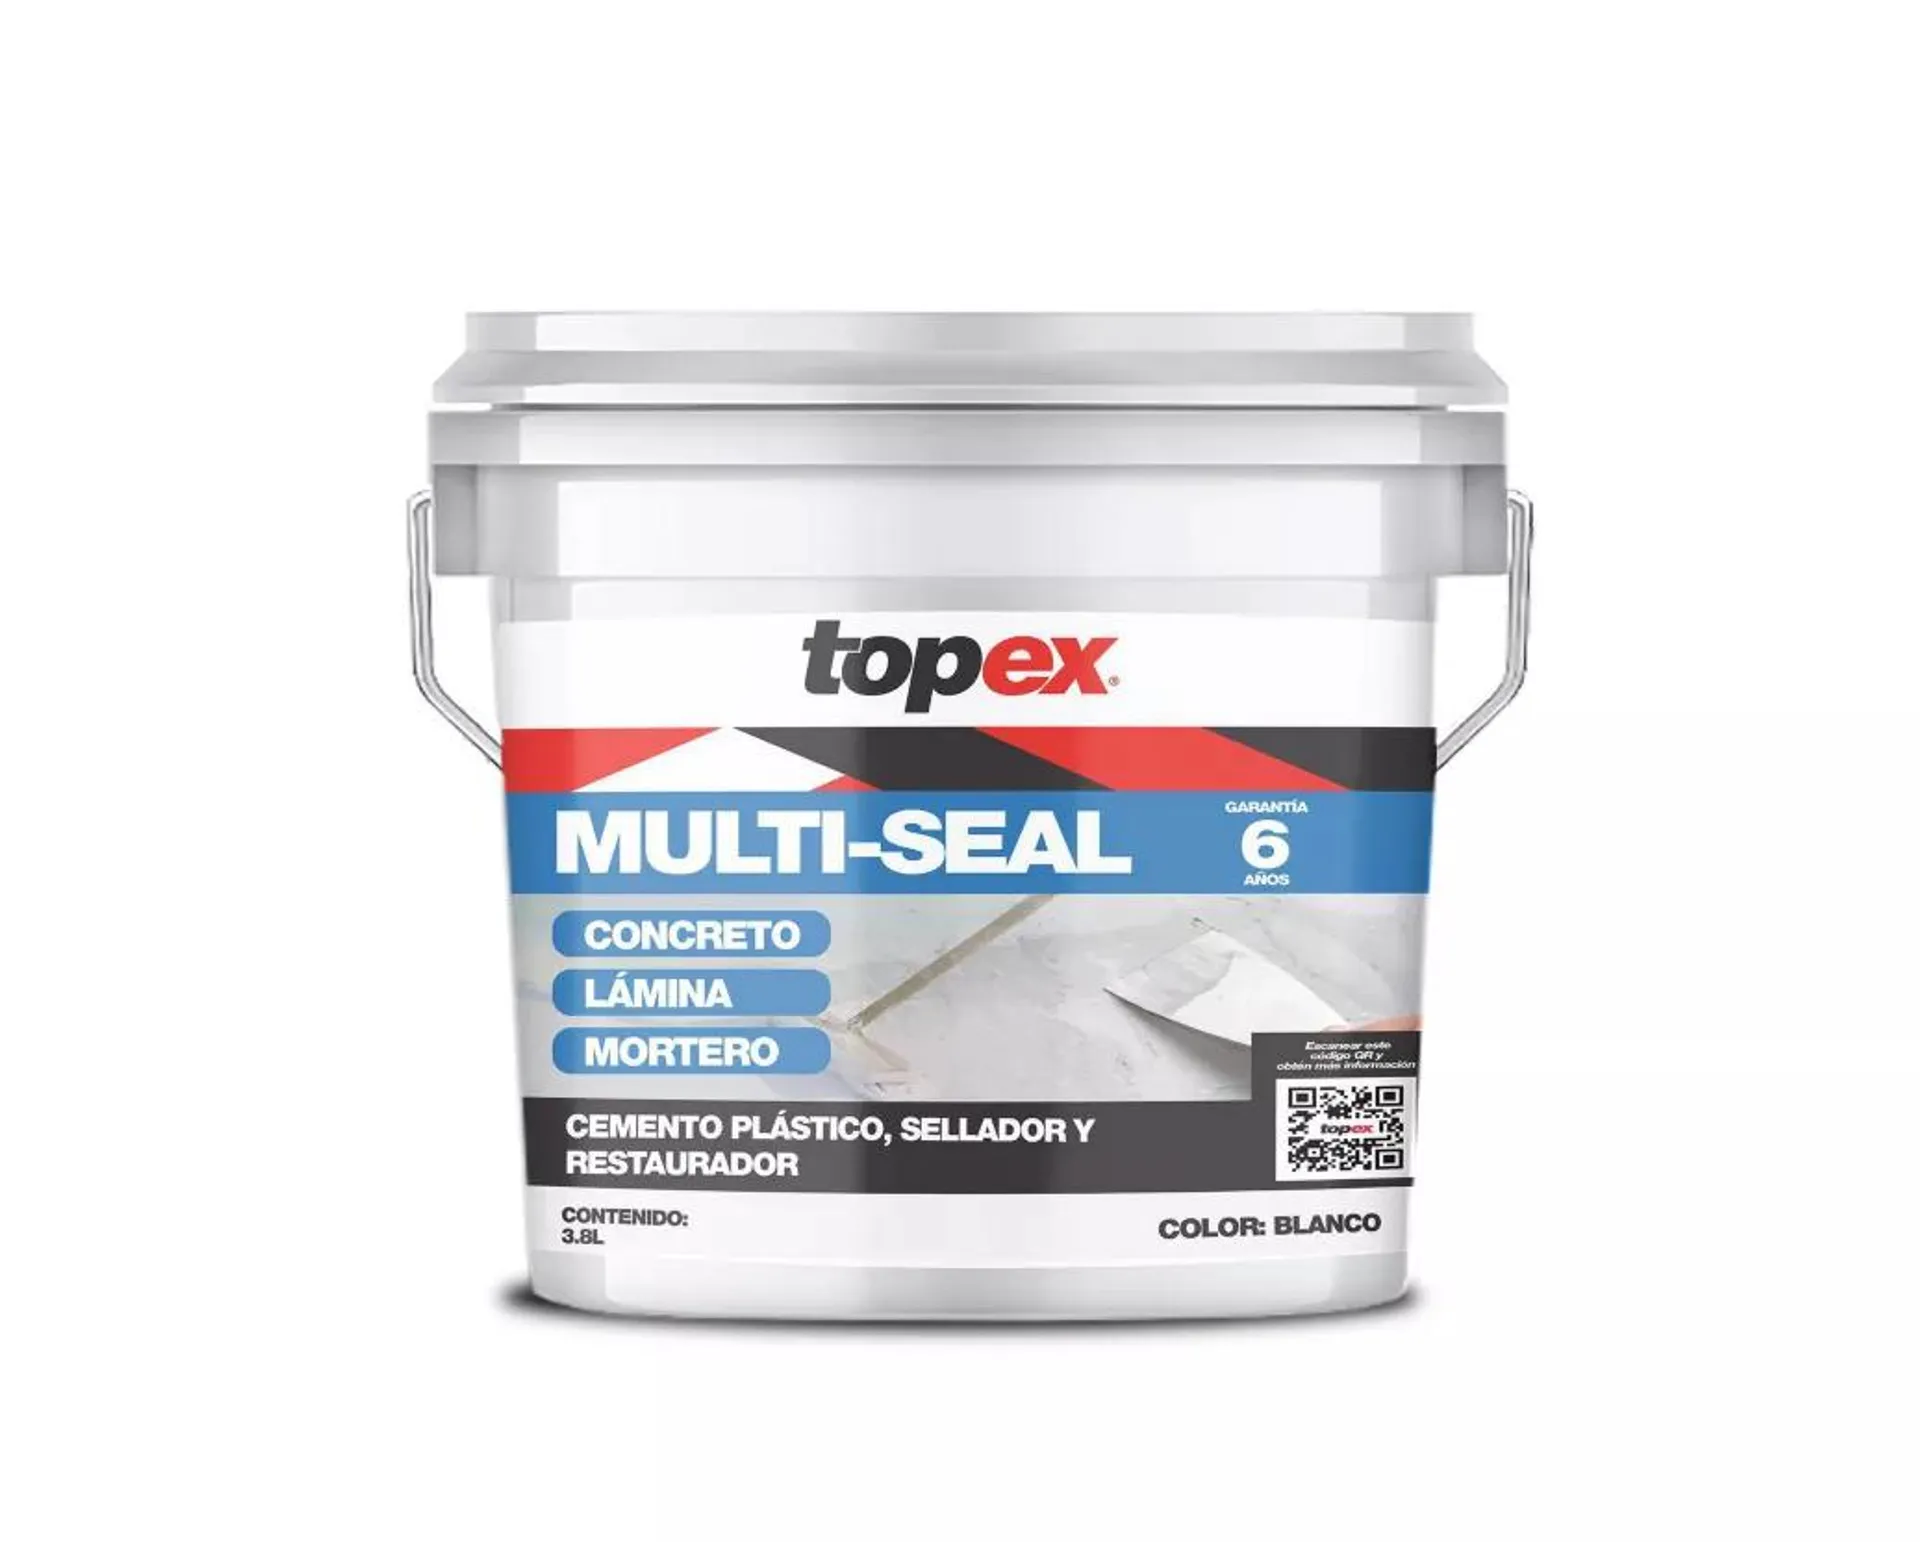 Cemento plástico, sellador y restaurador blanco Topex multi-seal 3.8 l